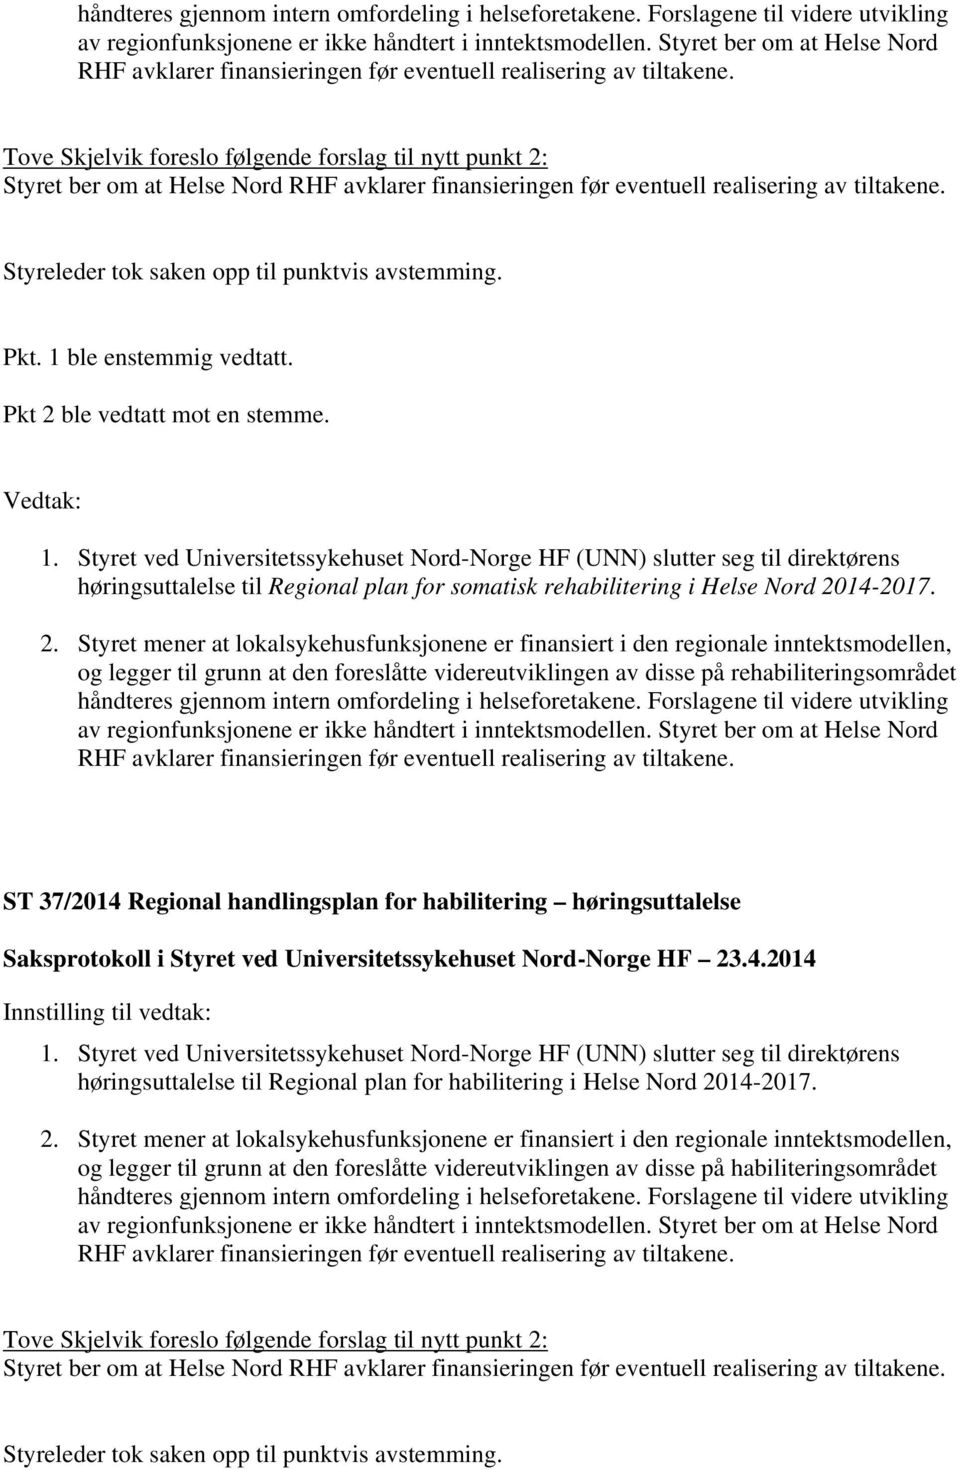 Tove Skjelvik foreslo følgende forslag til nytt punkt 2:  Styreleder tok saken opp til punktvis avstemming. Pkt. 1 